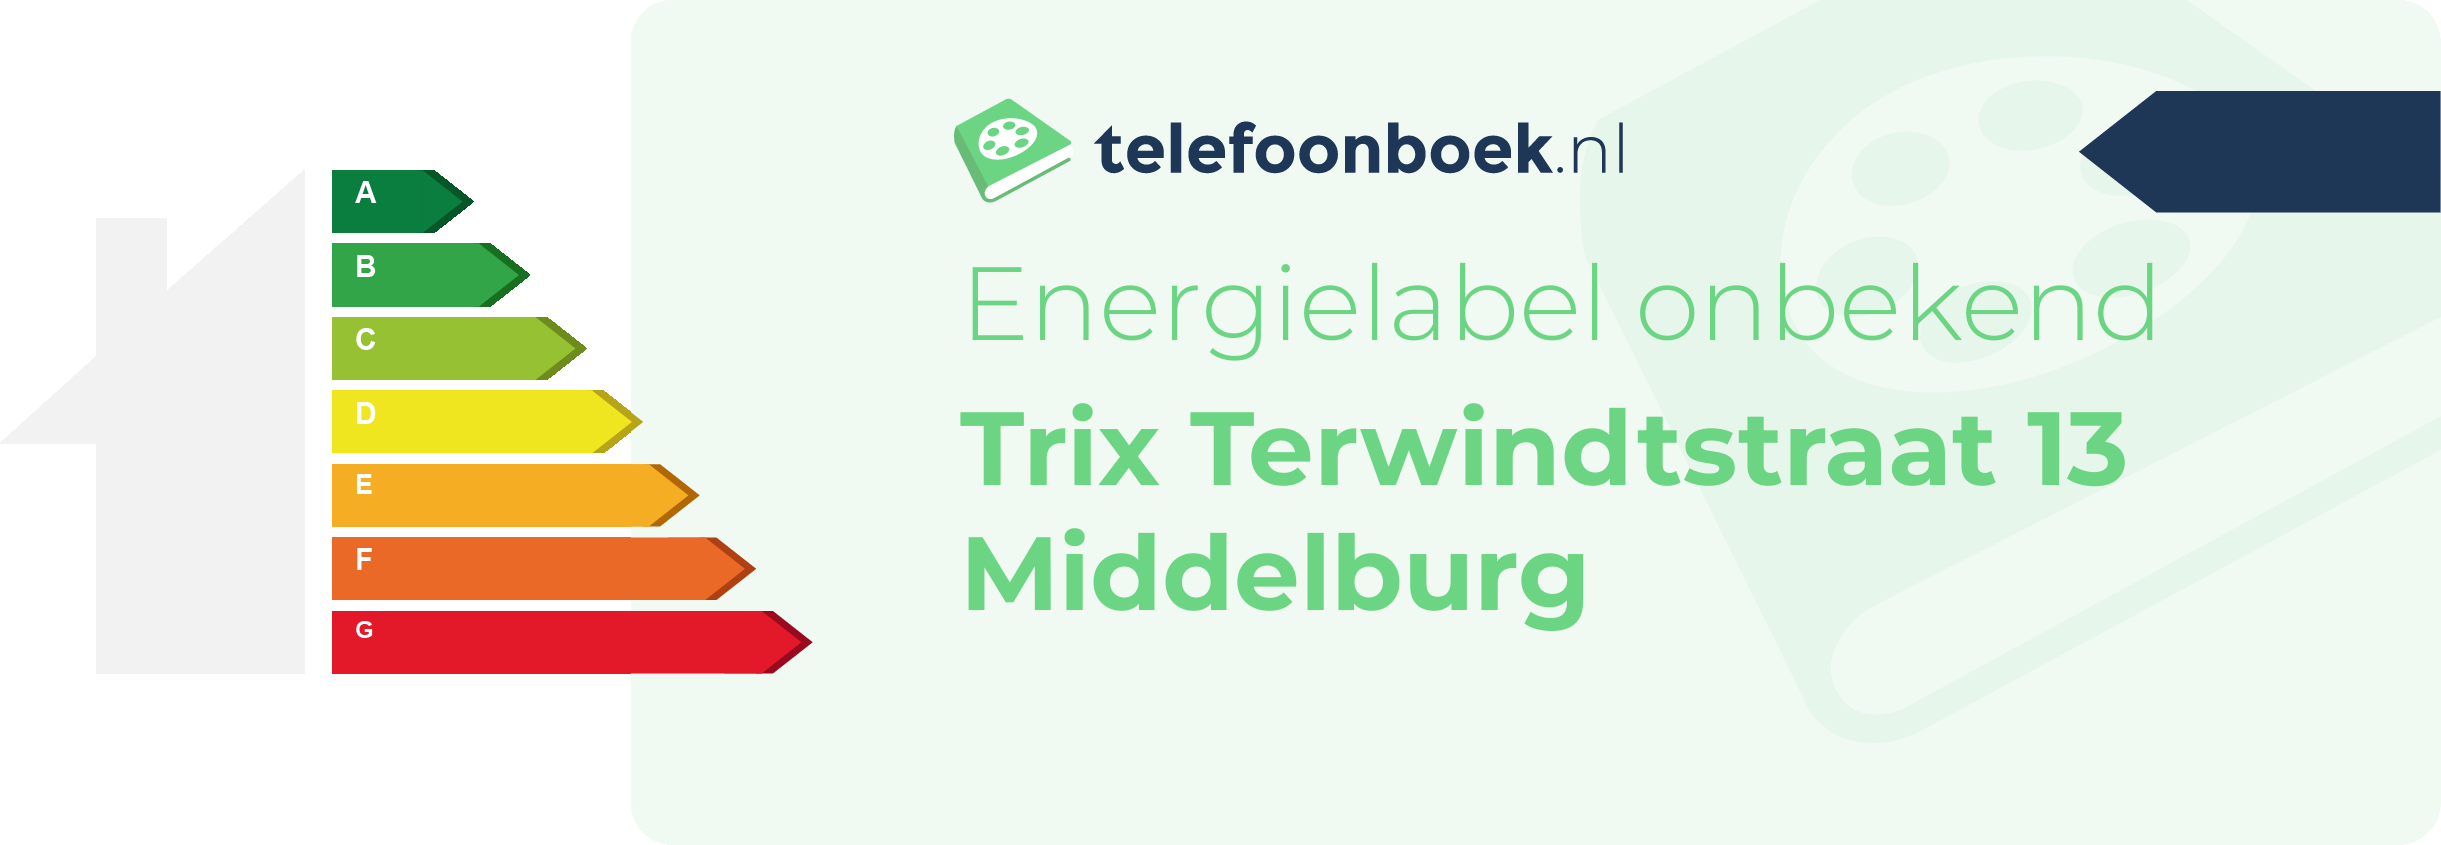 Energielabel Trix Terwindtstraat 13 Middelburg